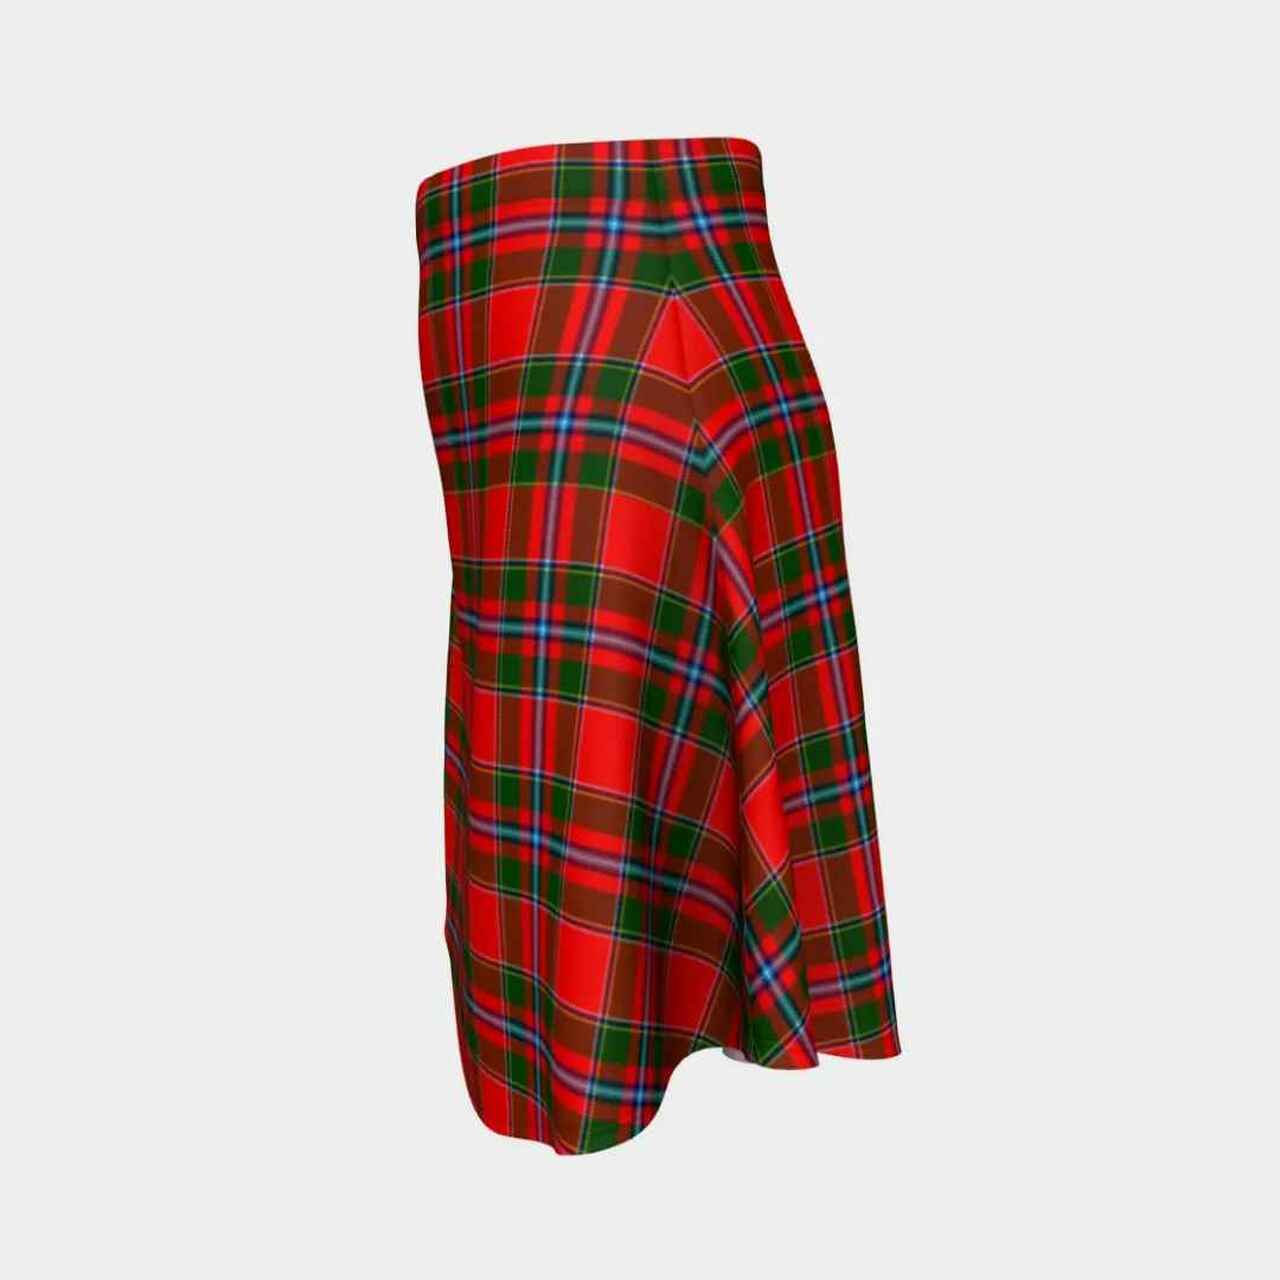 Perthshire District Tartan Flared Skirt